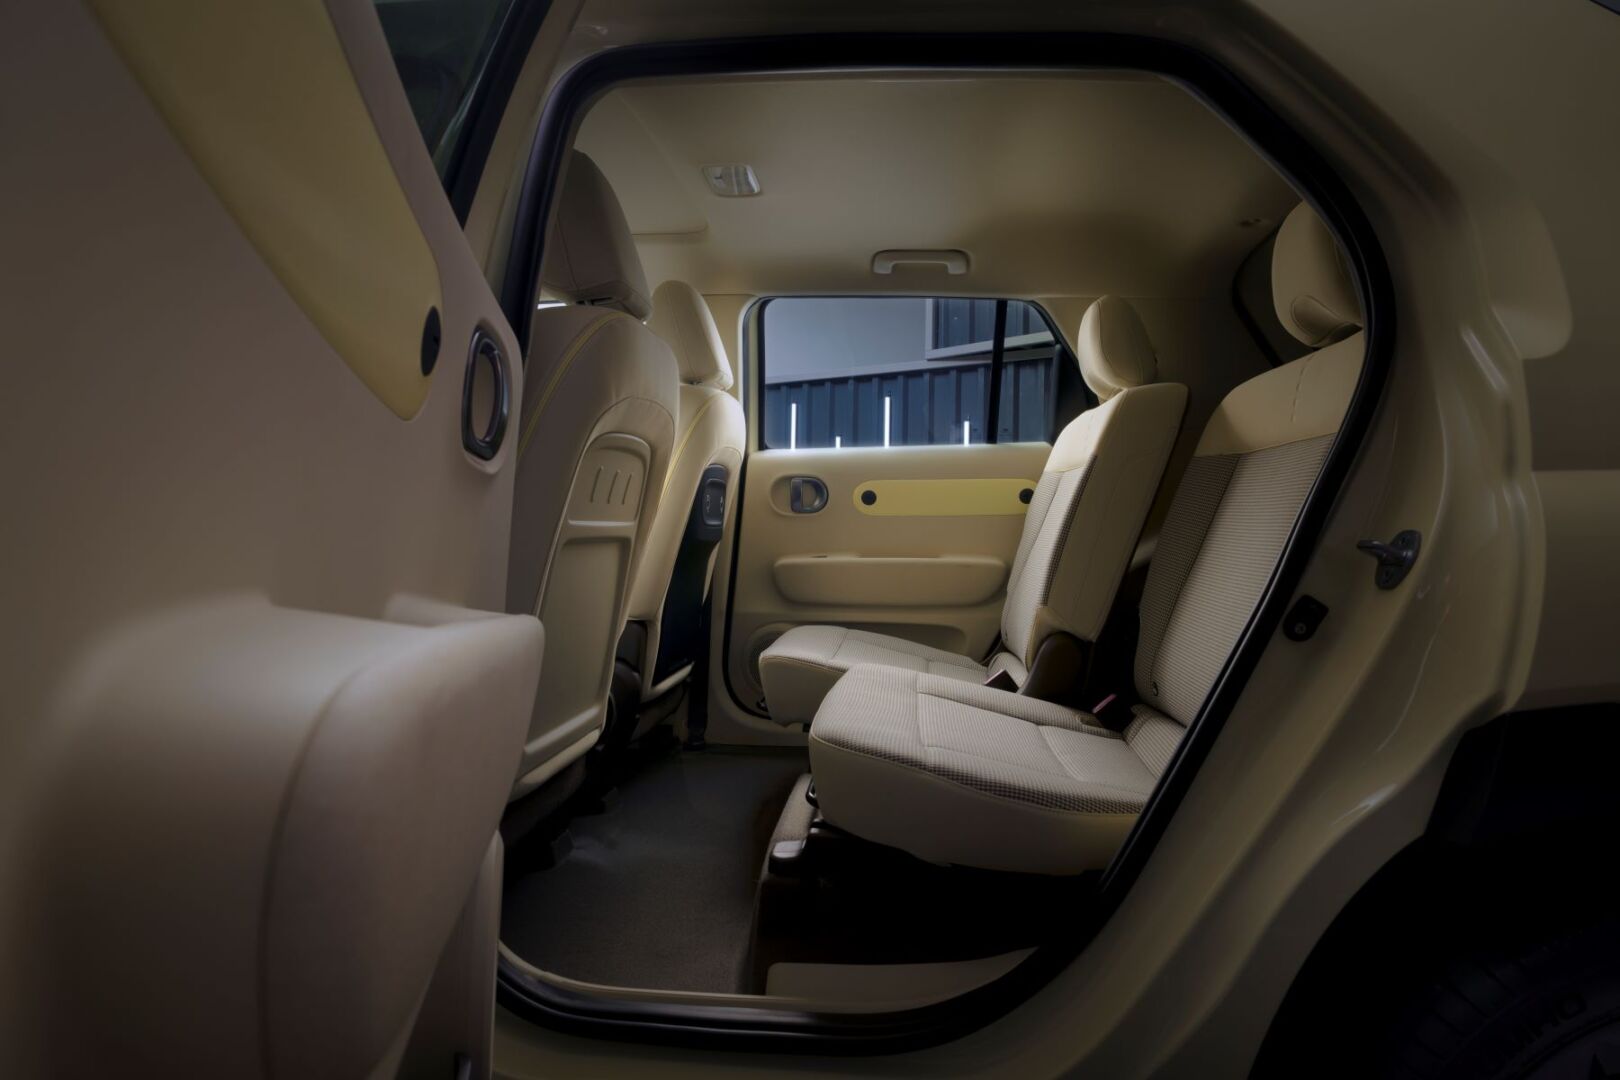 El Hyundai Inster 100% eléctrico, el auto urbano hasta con 355 km de autonomía según WLTP. El INSTER se lanzará dentro de poco en el mundo con un modelo adicional que se unirá a la familia. V12MAGAZINE